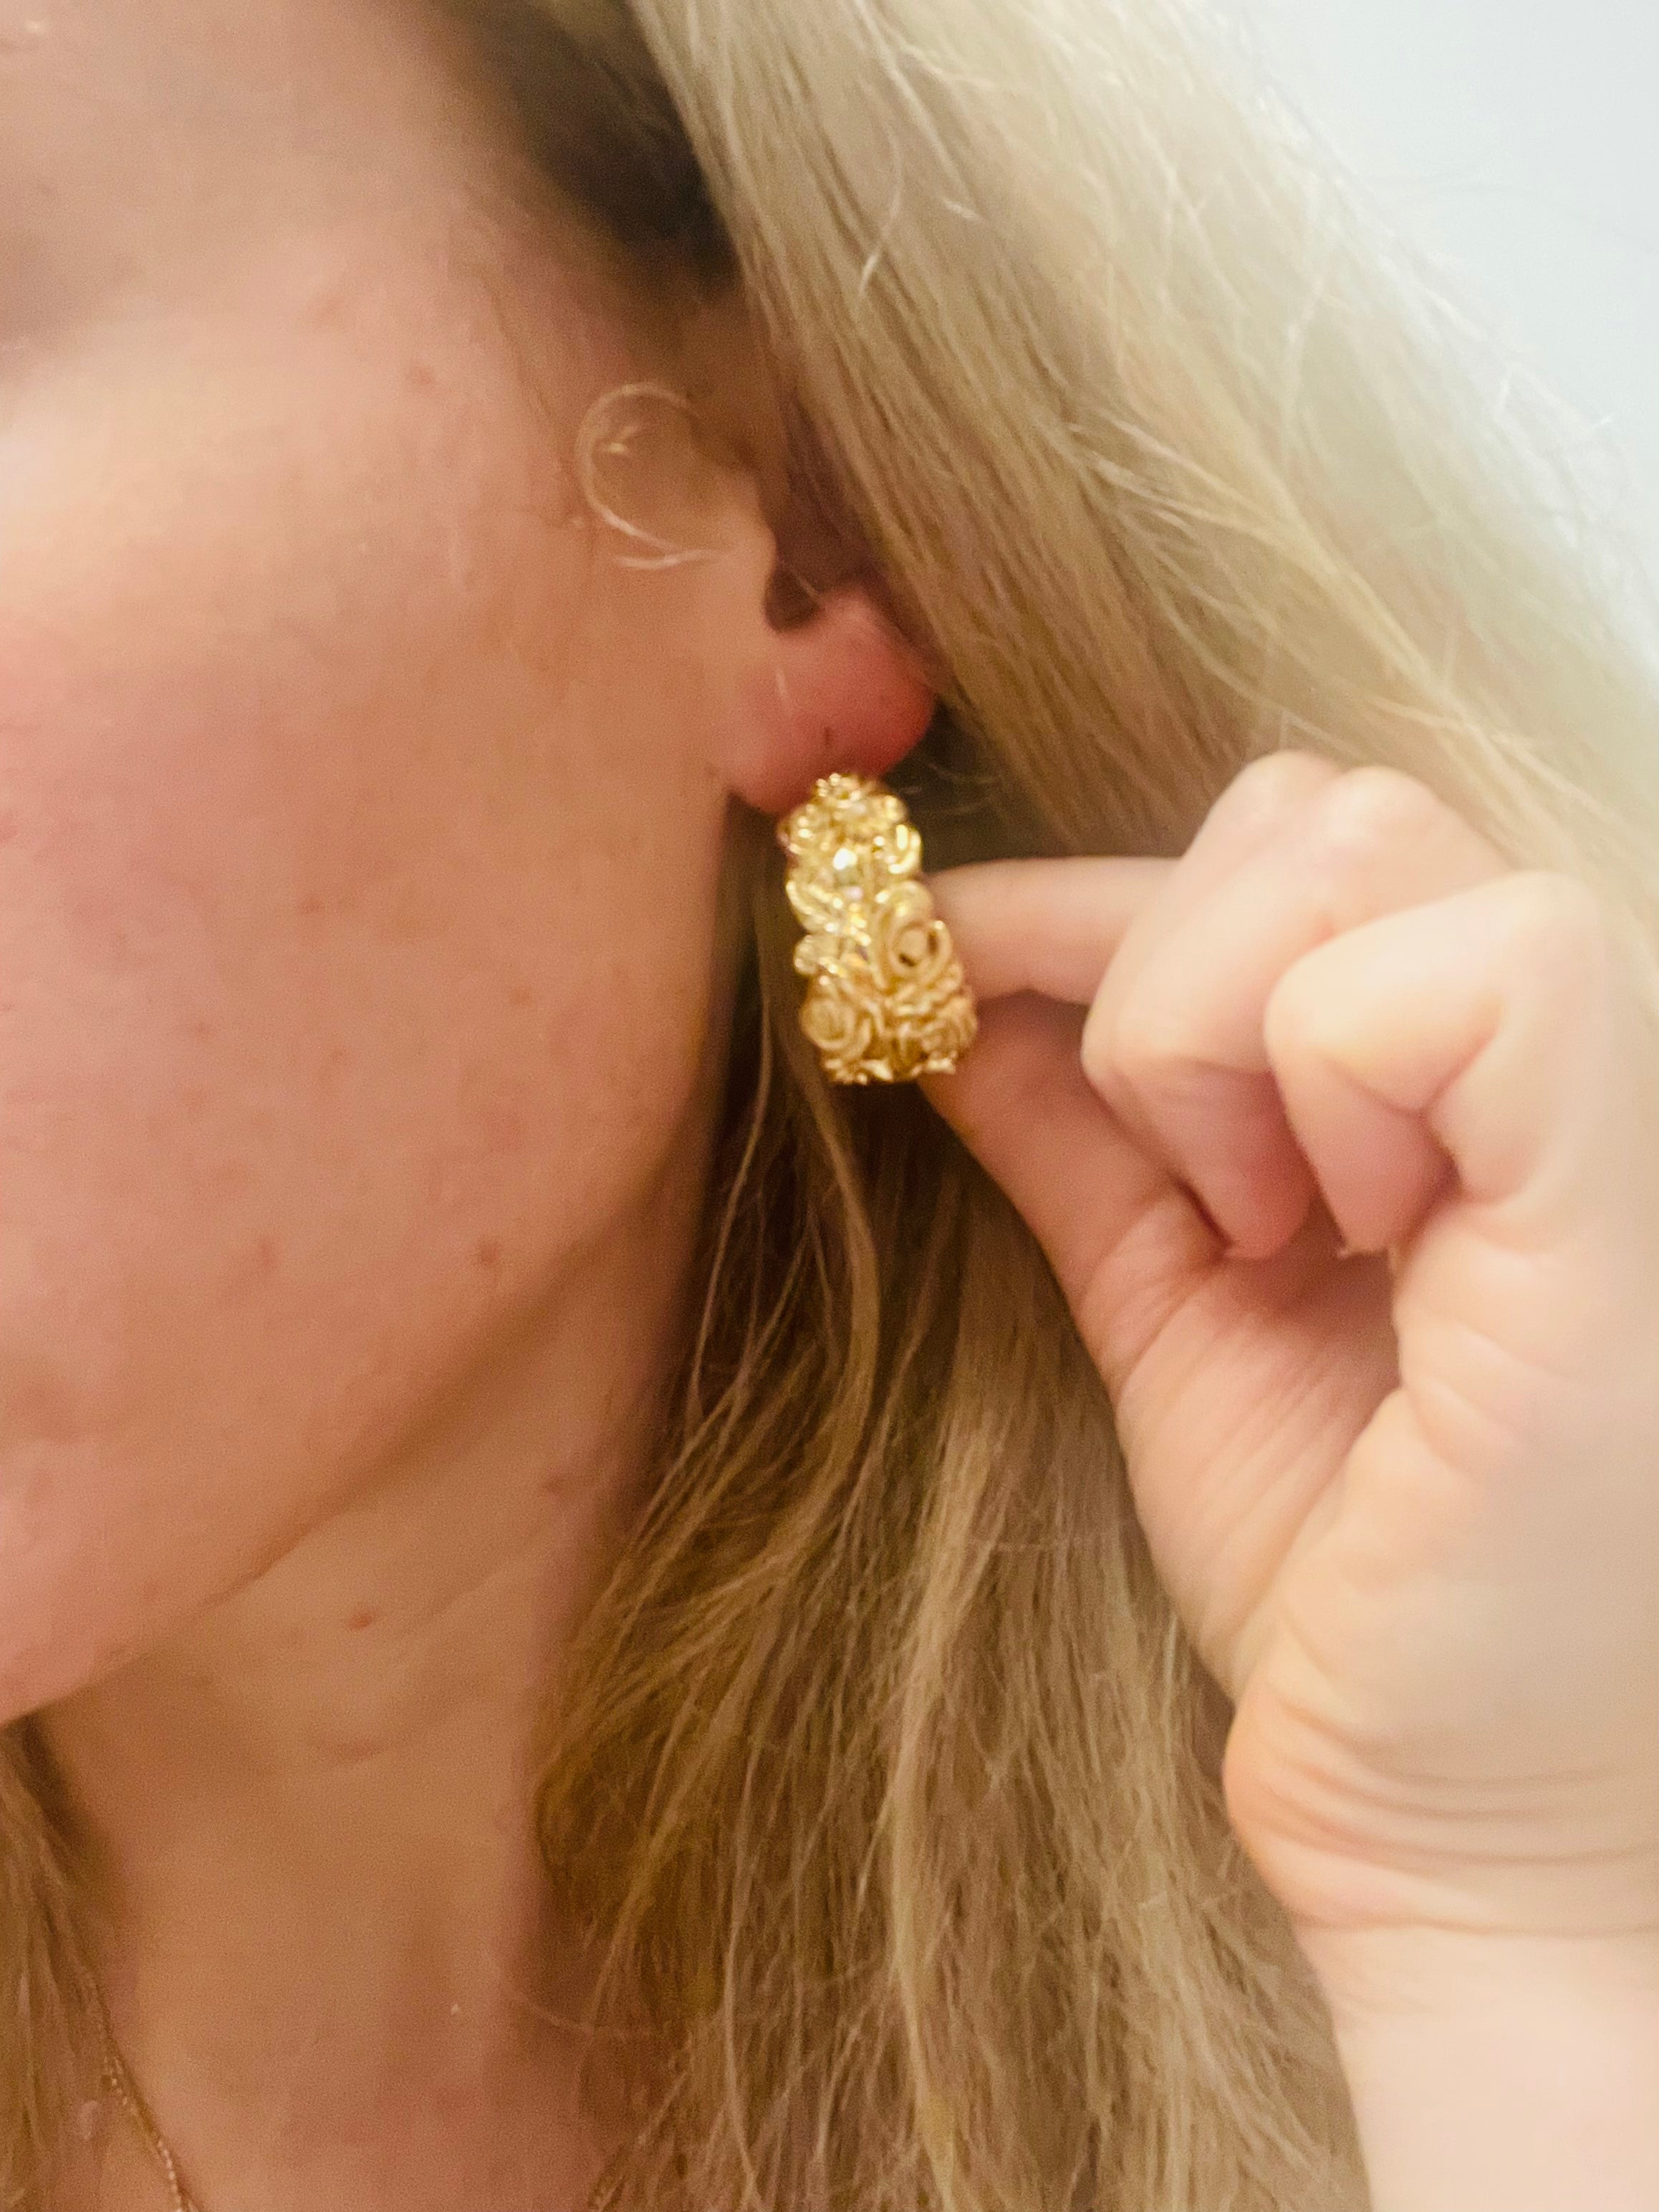 1.25" 14K Yellow Gold Italian Rose Wide Hoop Earrings